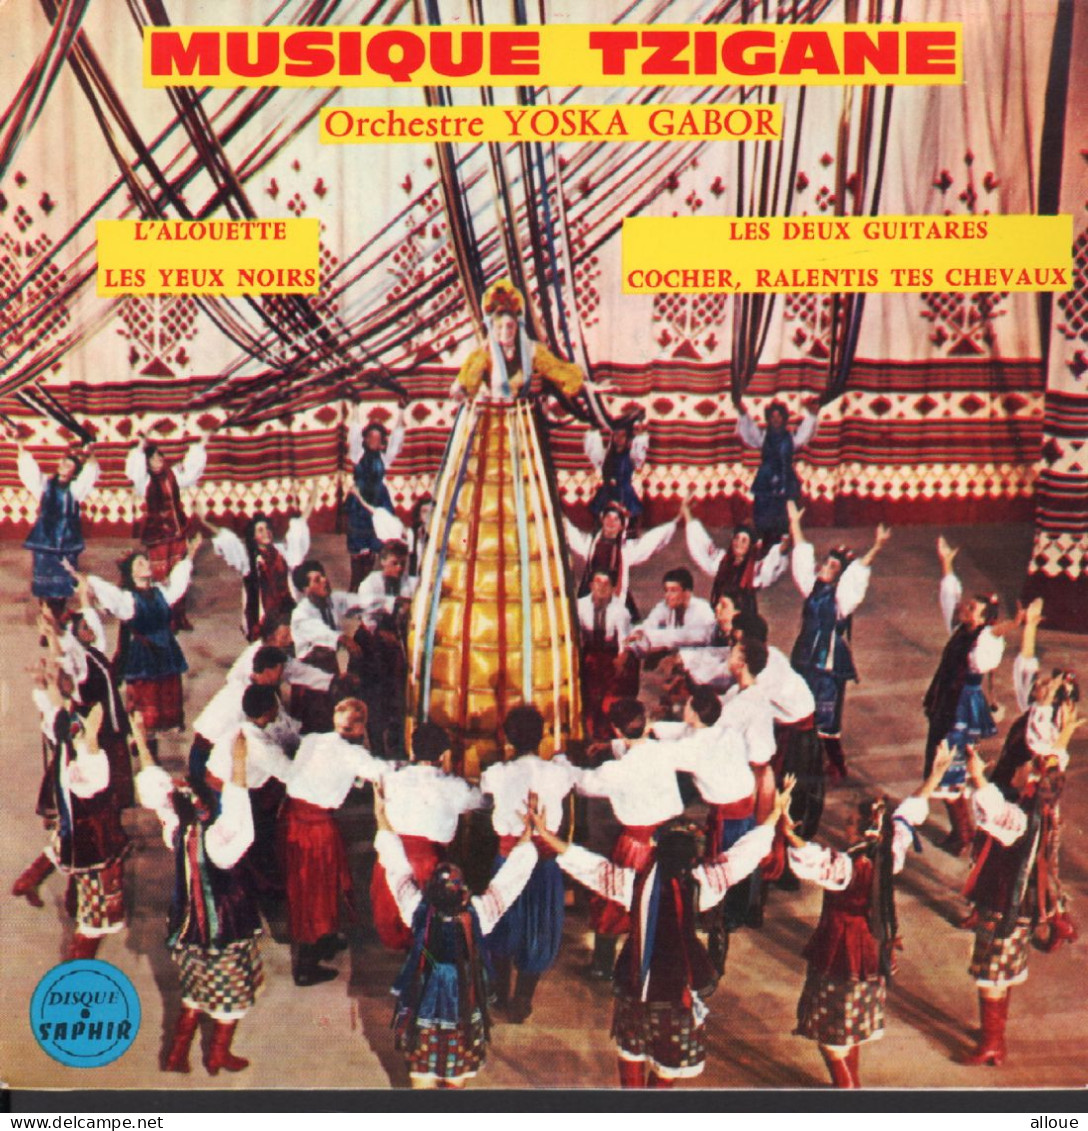 YOSKA GABOR - MUSIQUE TZIGANE - FR EP - L'ALOUETTE + 3 - Música Del Mundo